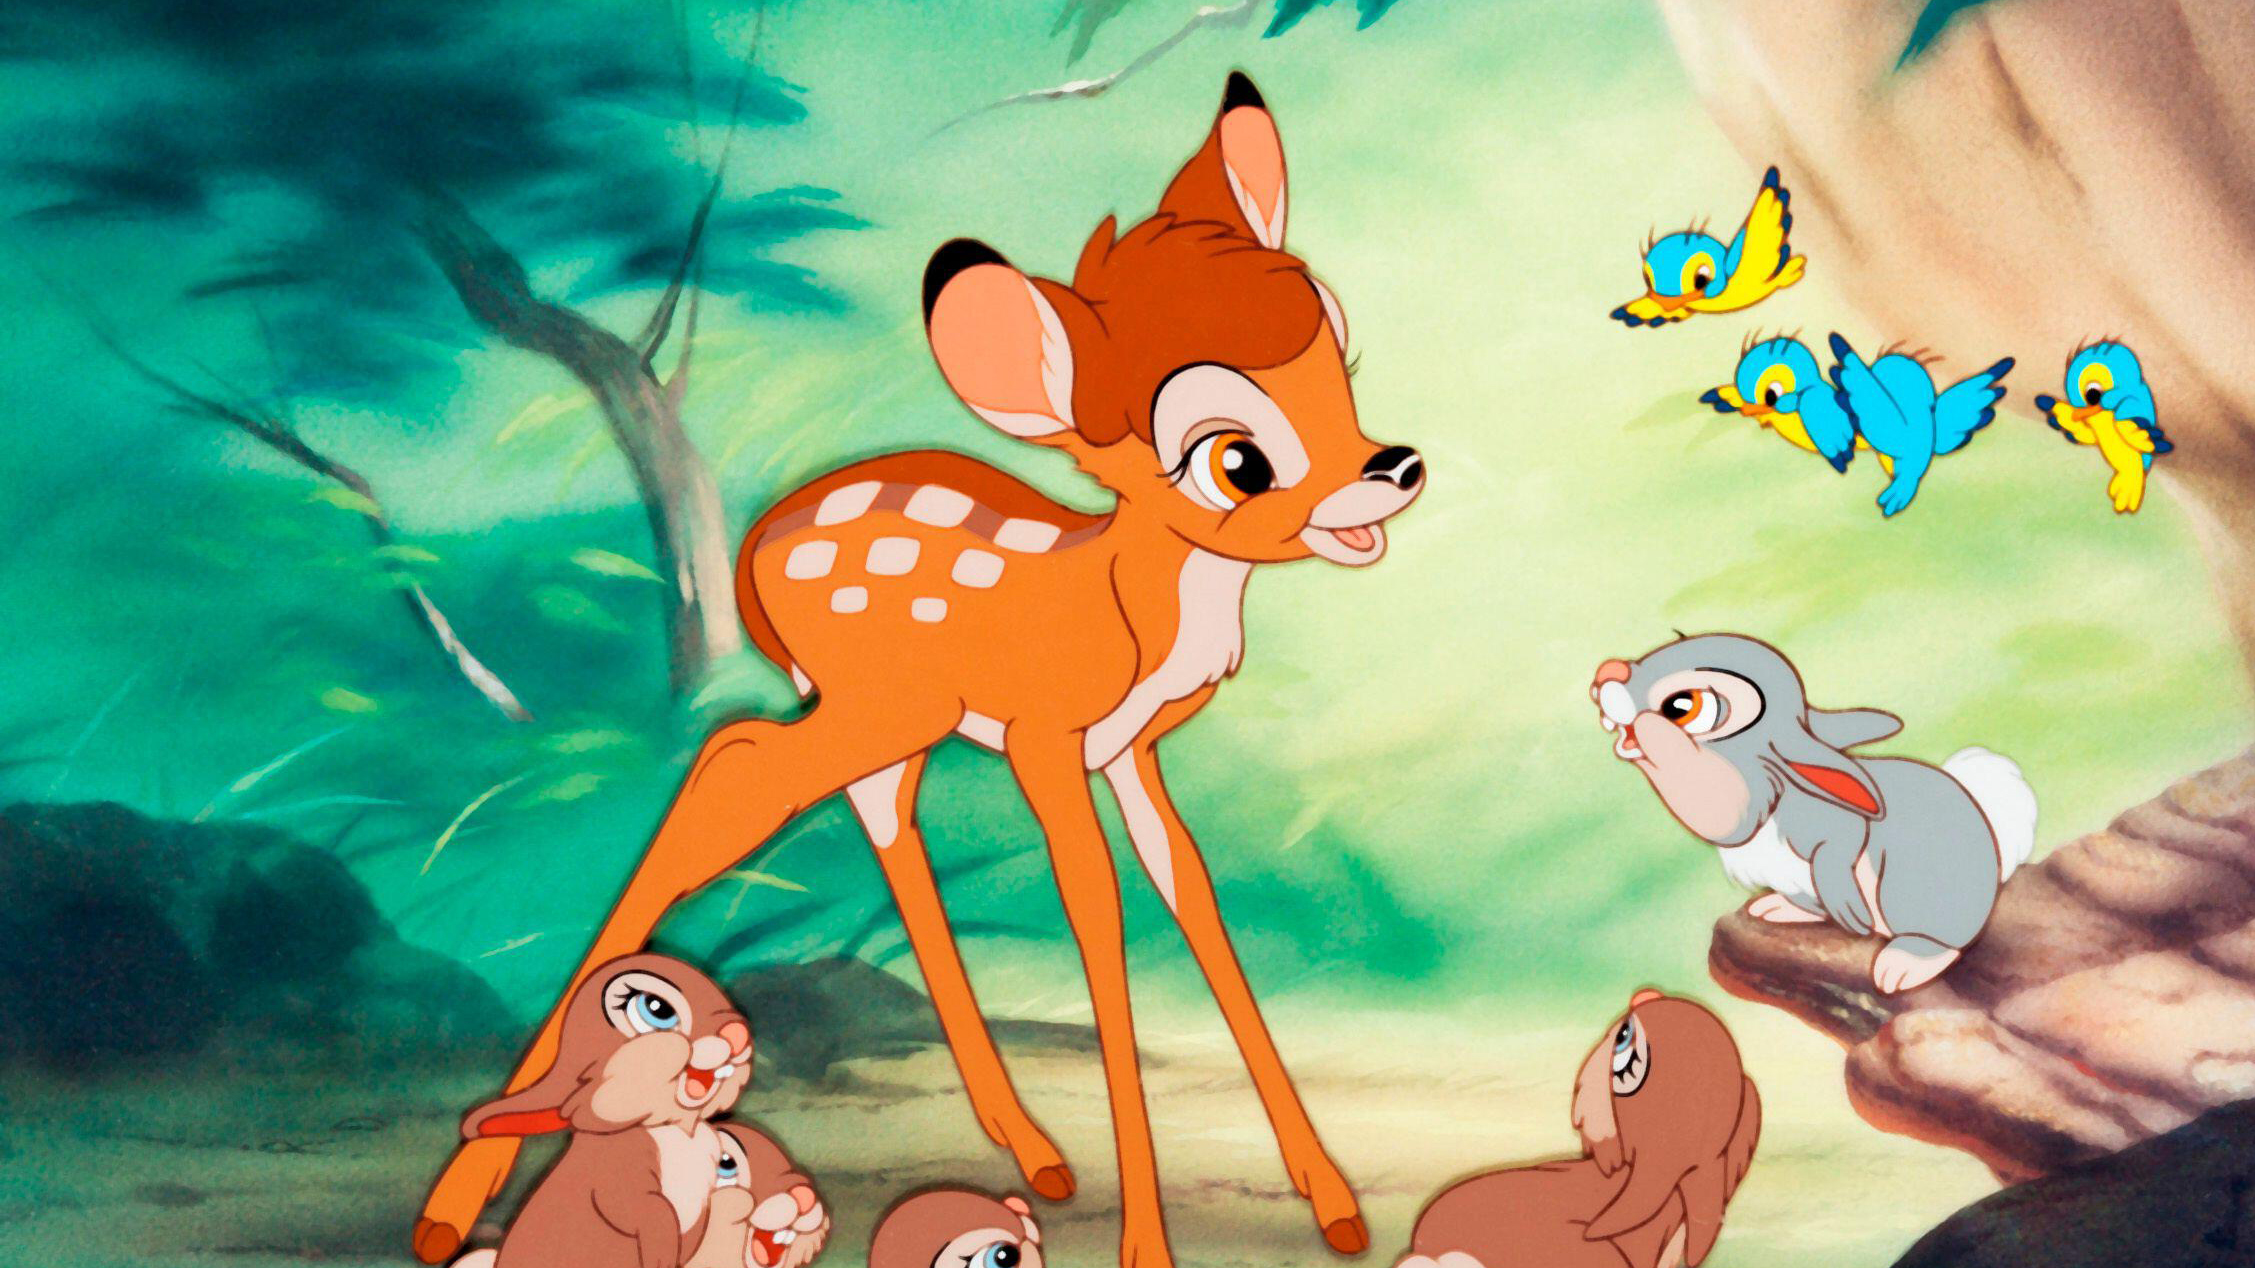 Bambi  Disney Movies